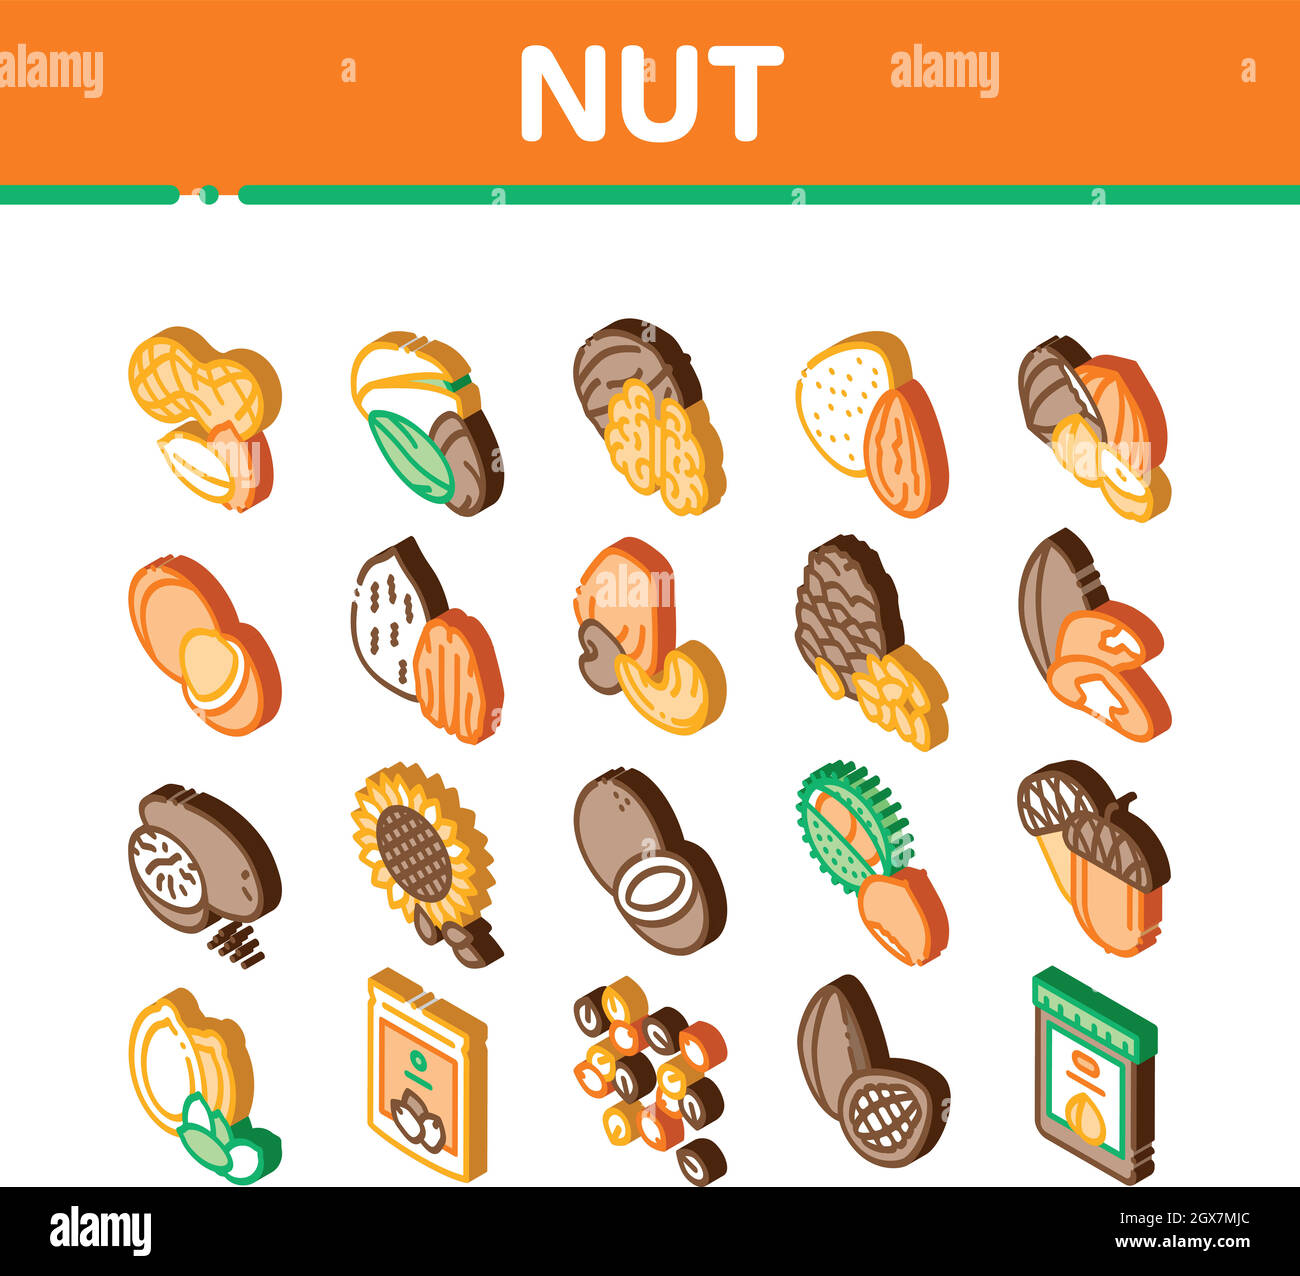 Nut Food icone isometriche diverse Imposta vettore Illustrazione Vettoriale